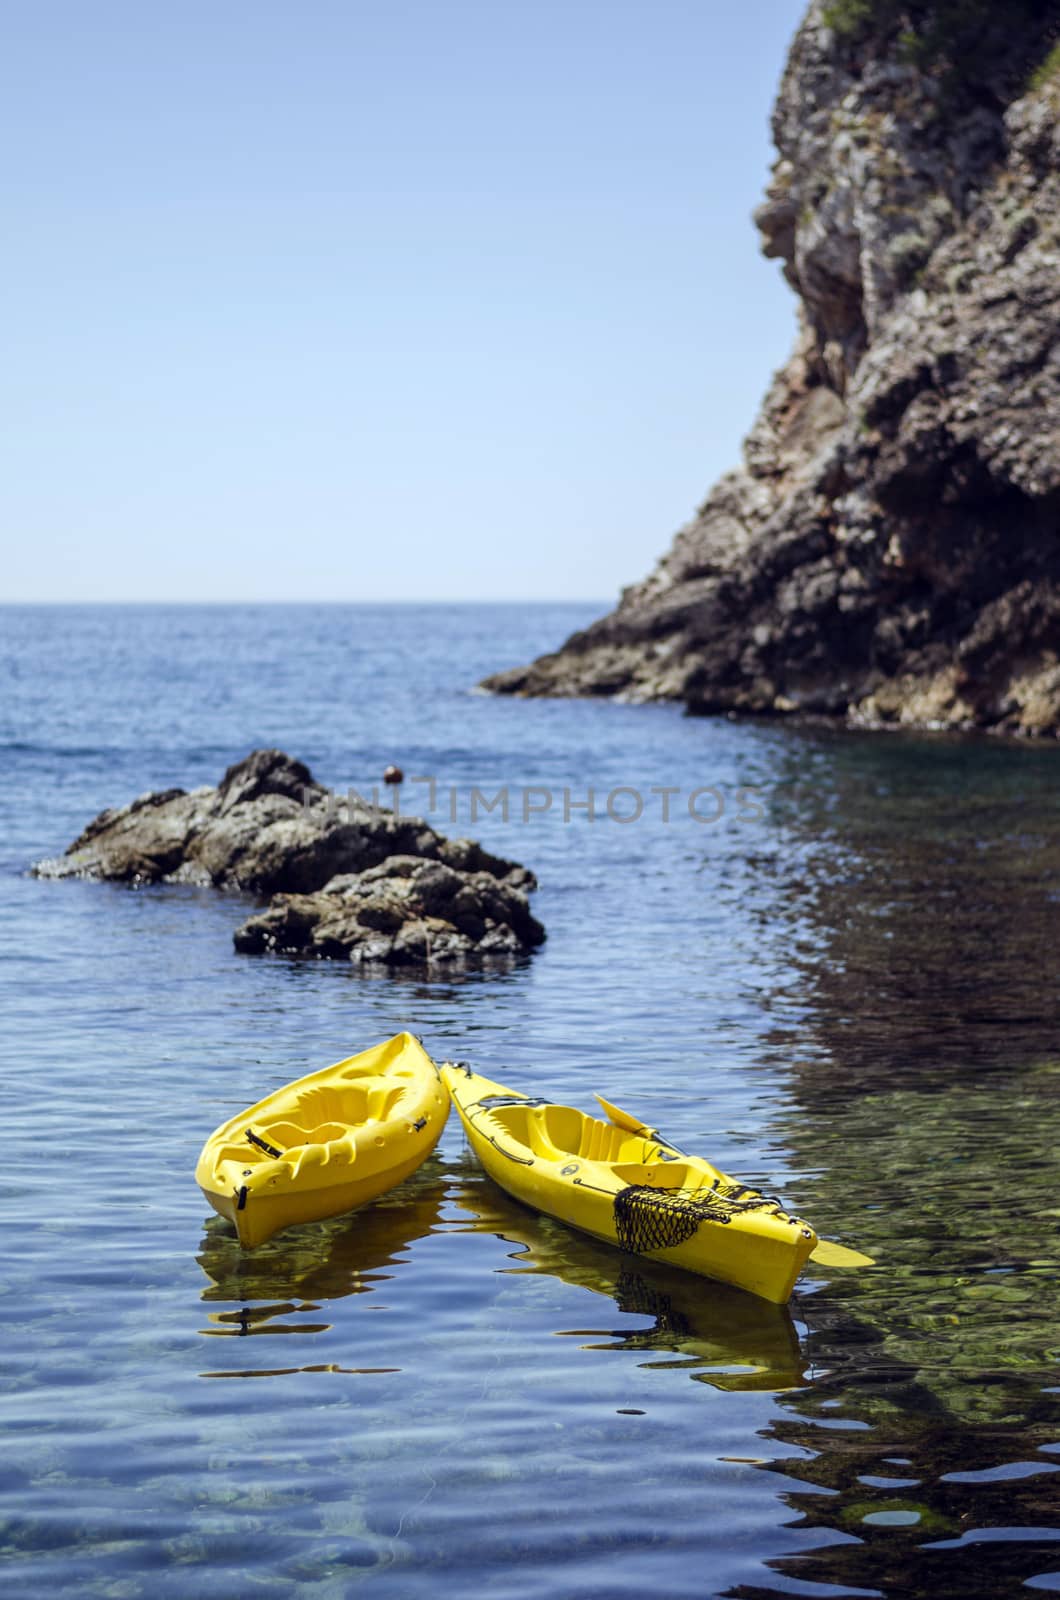 Pair of canoes at the cliffy seashore near Dubrovnik, Croatia.